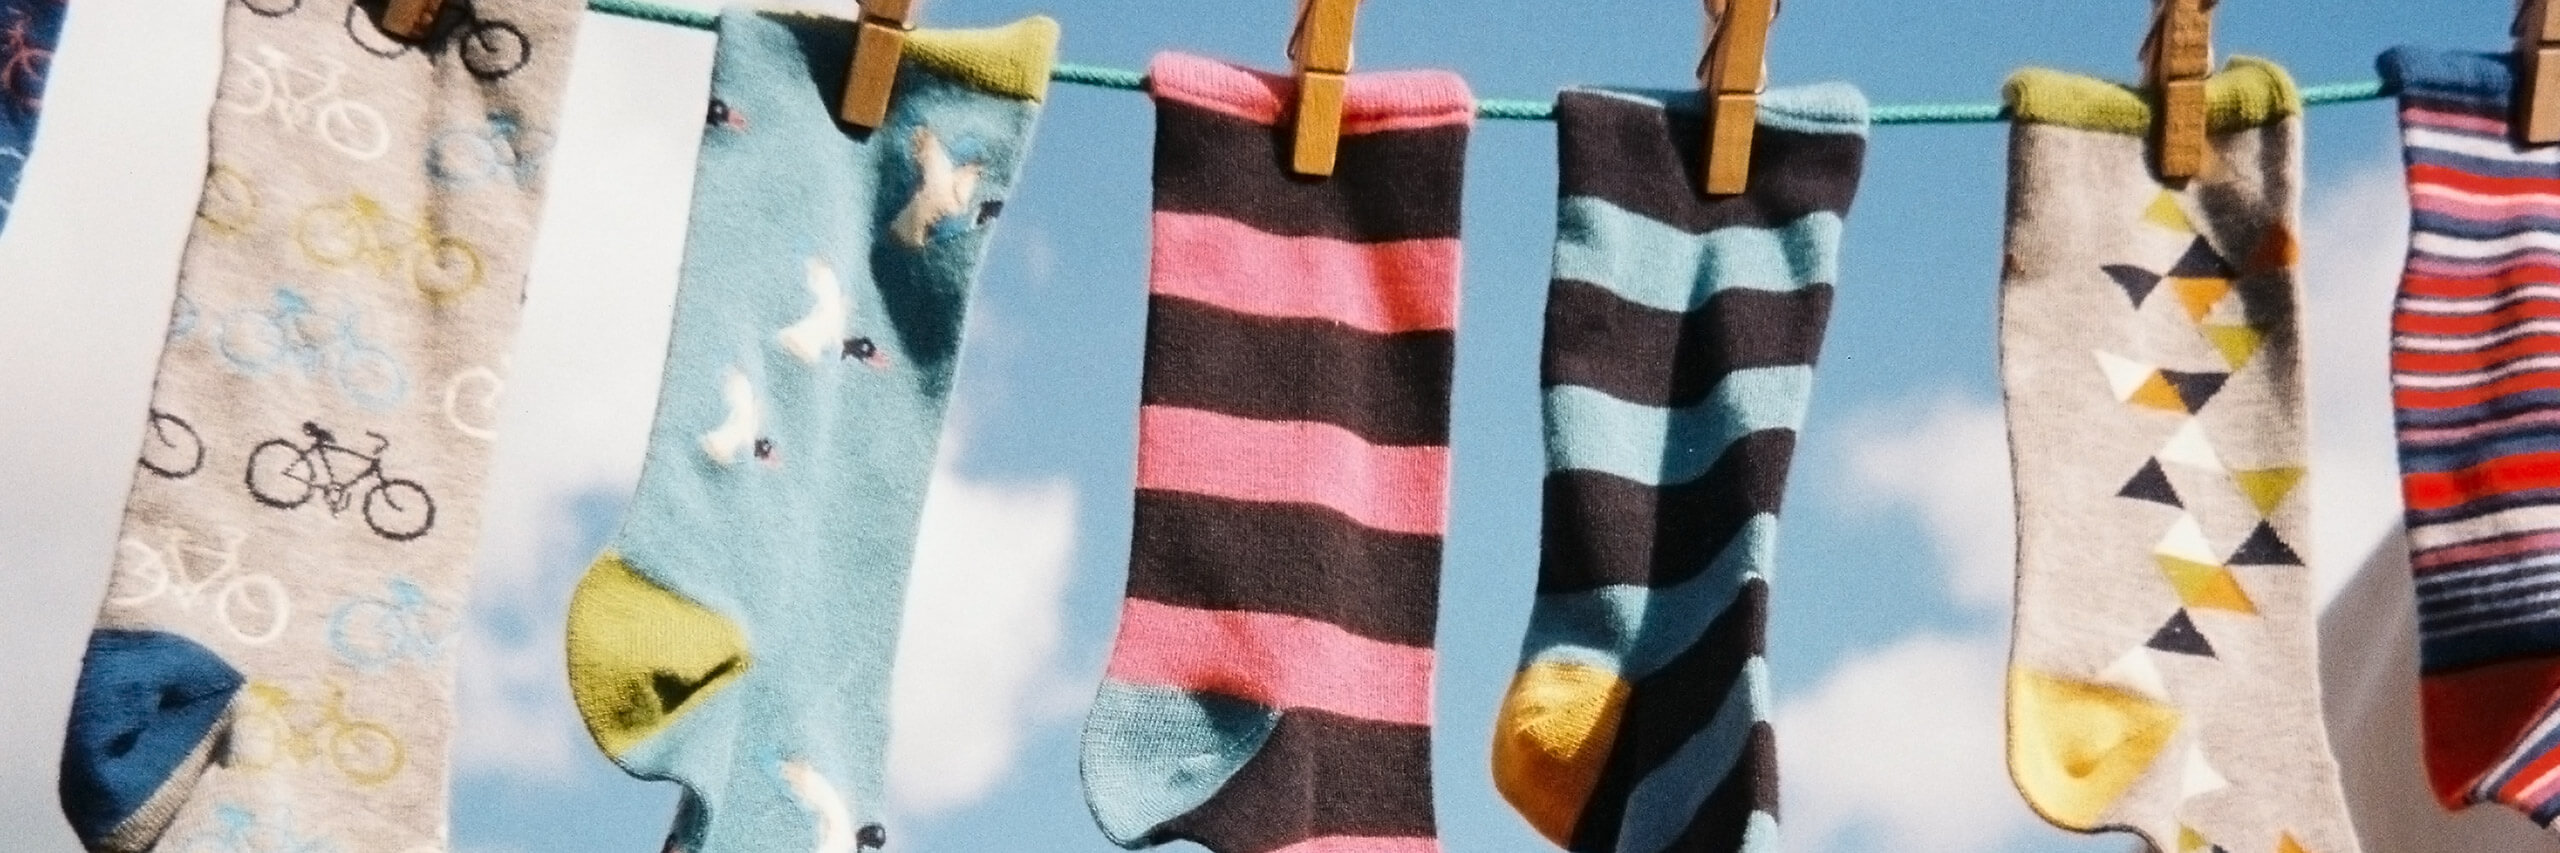 袜子挂在一根电线的形象。